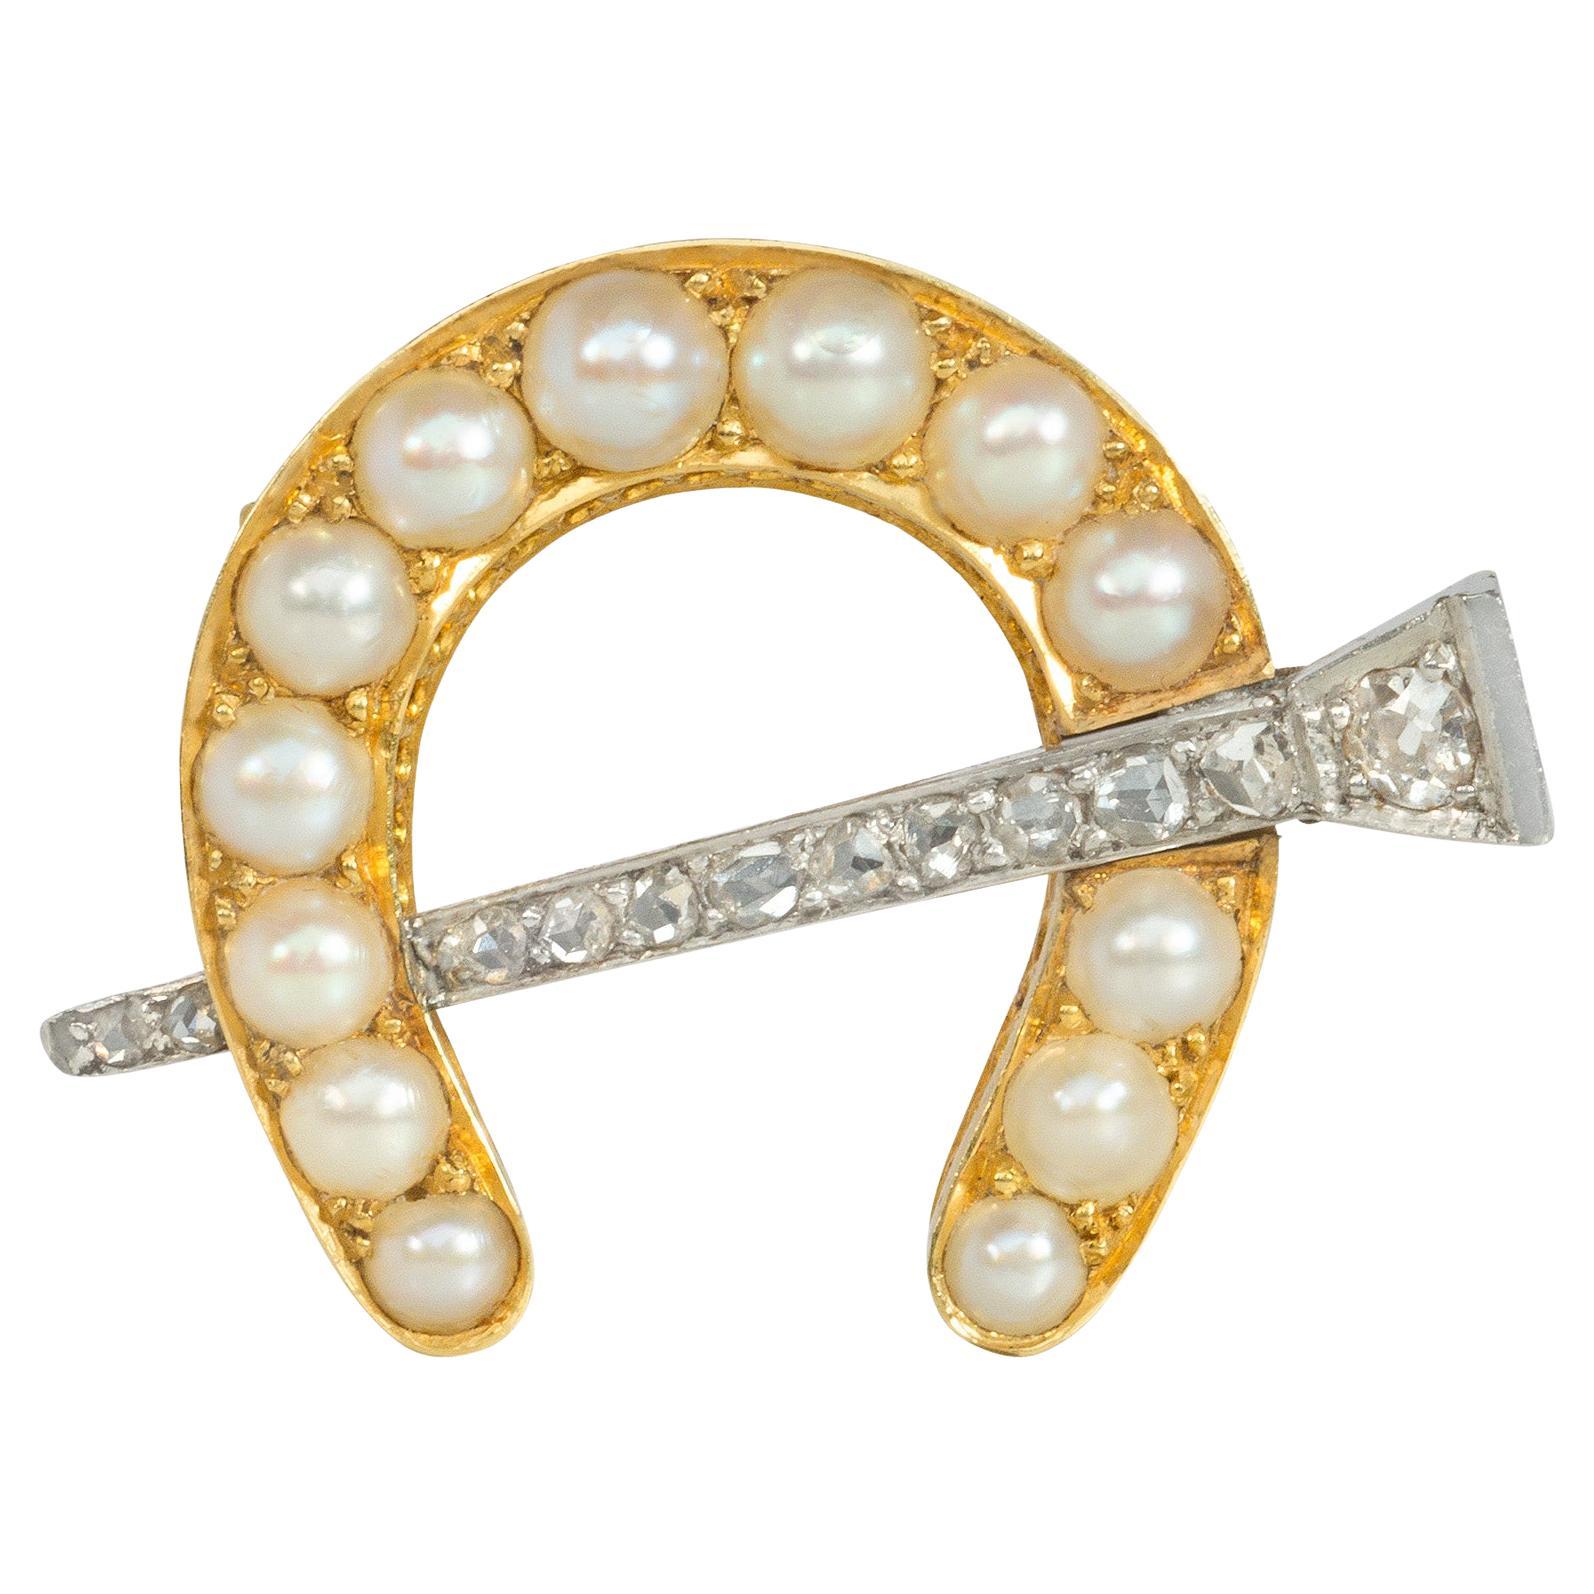 Antike Gold- und Perlen-Hufeisenbrosche mit diamantbesetztem Nagel und Anhänger-Schlaufe